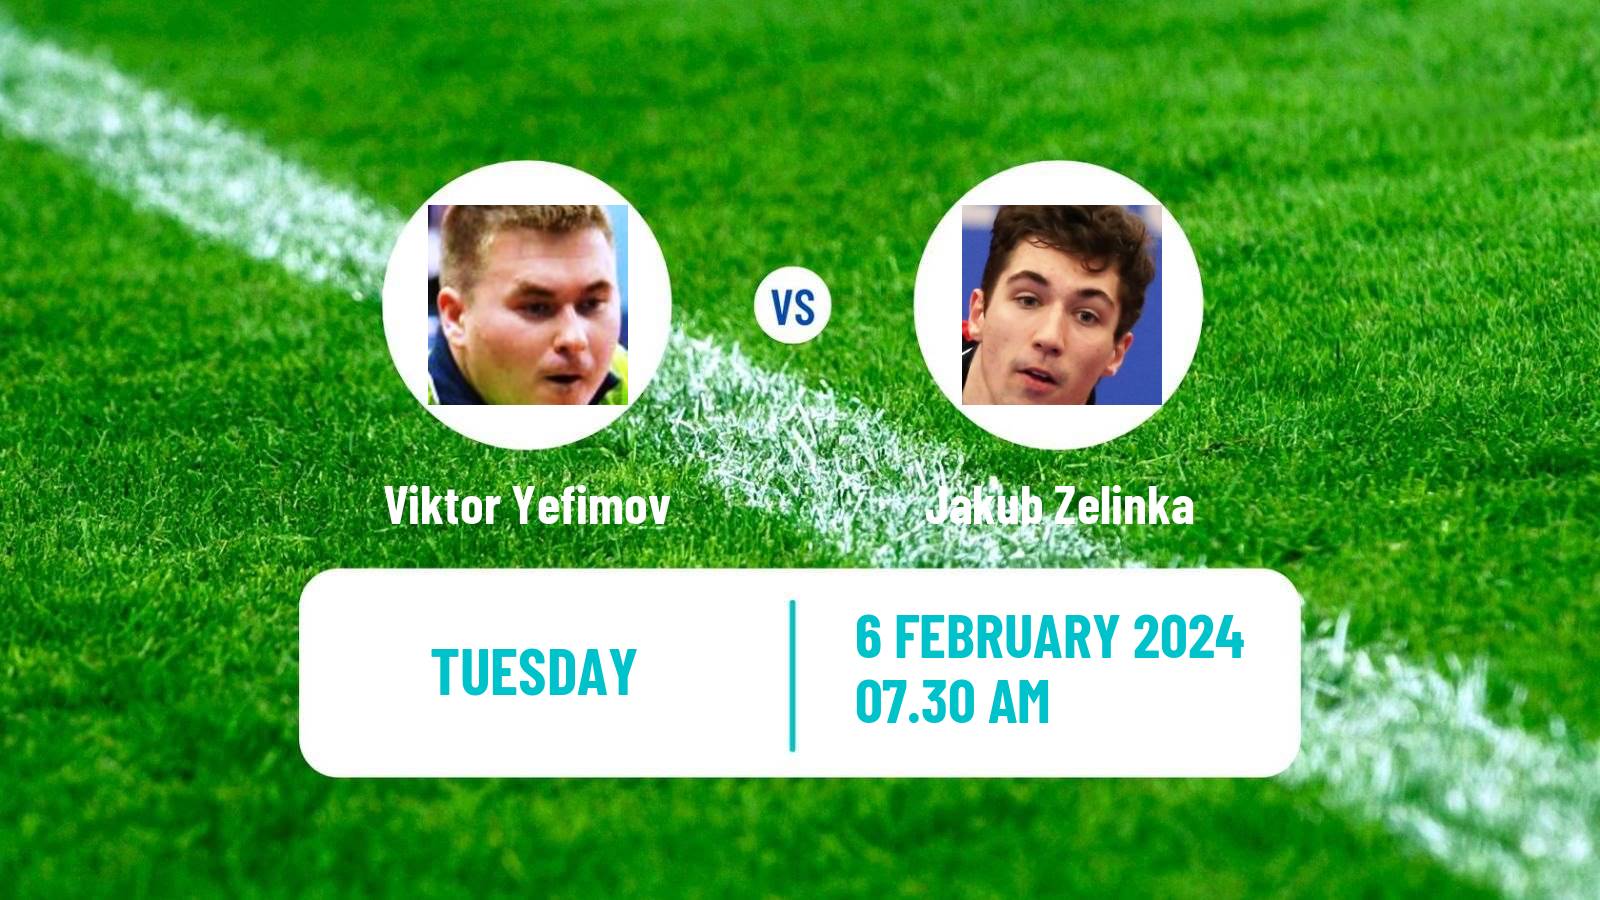 Table tennis Tt Star Series Men Viktor Yefimov - Jakub Zelinka